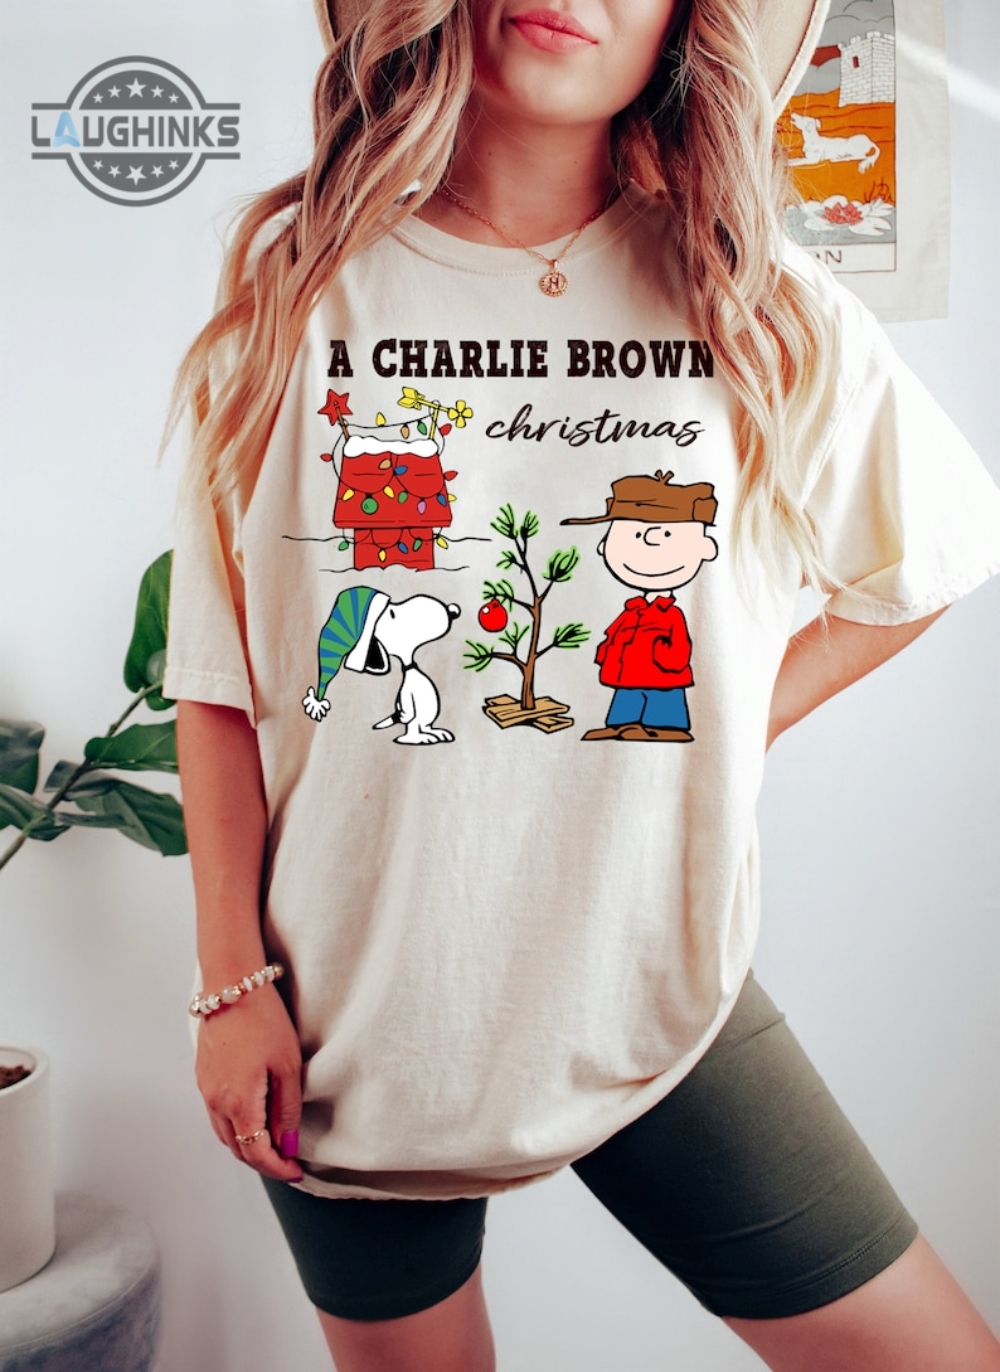 Peanuts Christmas Shirt Sweatshirt Hoodie Charlie Brown Sweater Adult Kid Charlie Brown Toddler Shirts Merry Xmas Snoopy Cartoon Movie